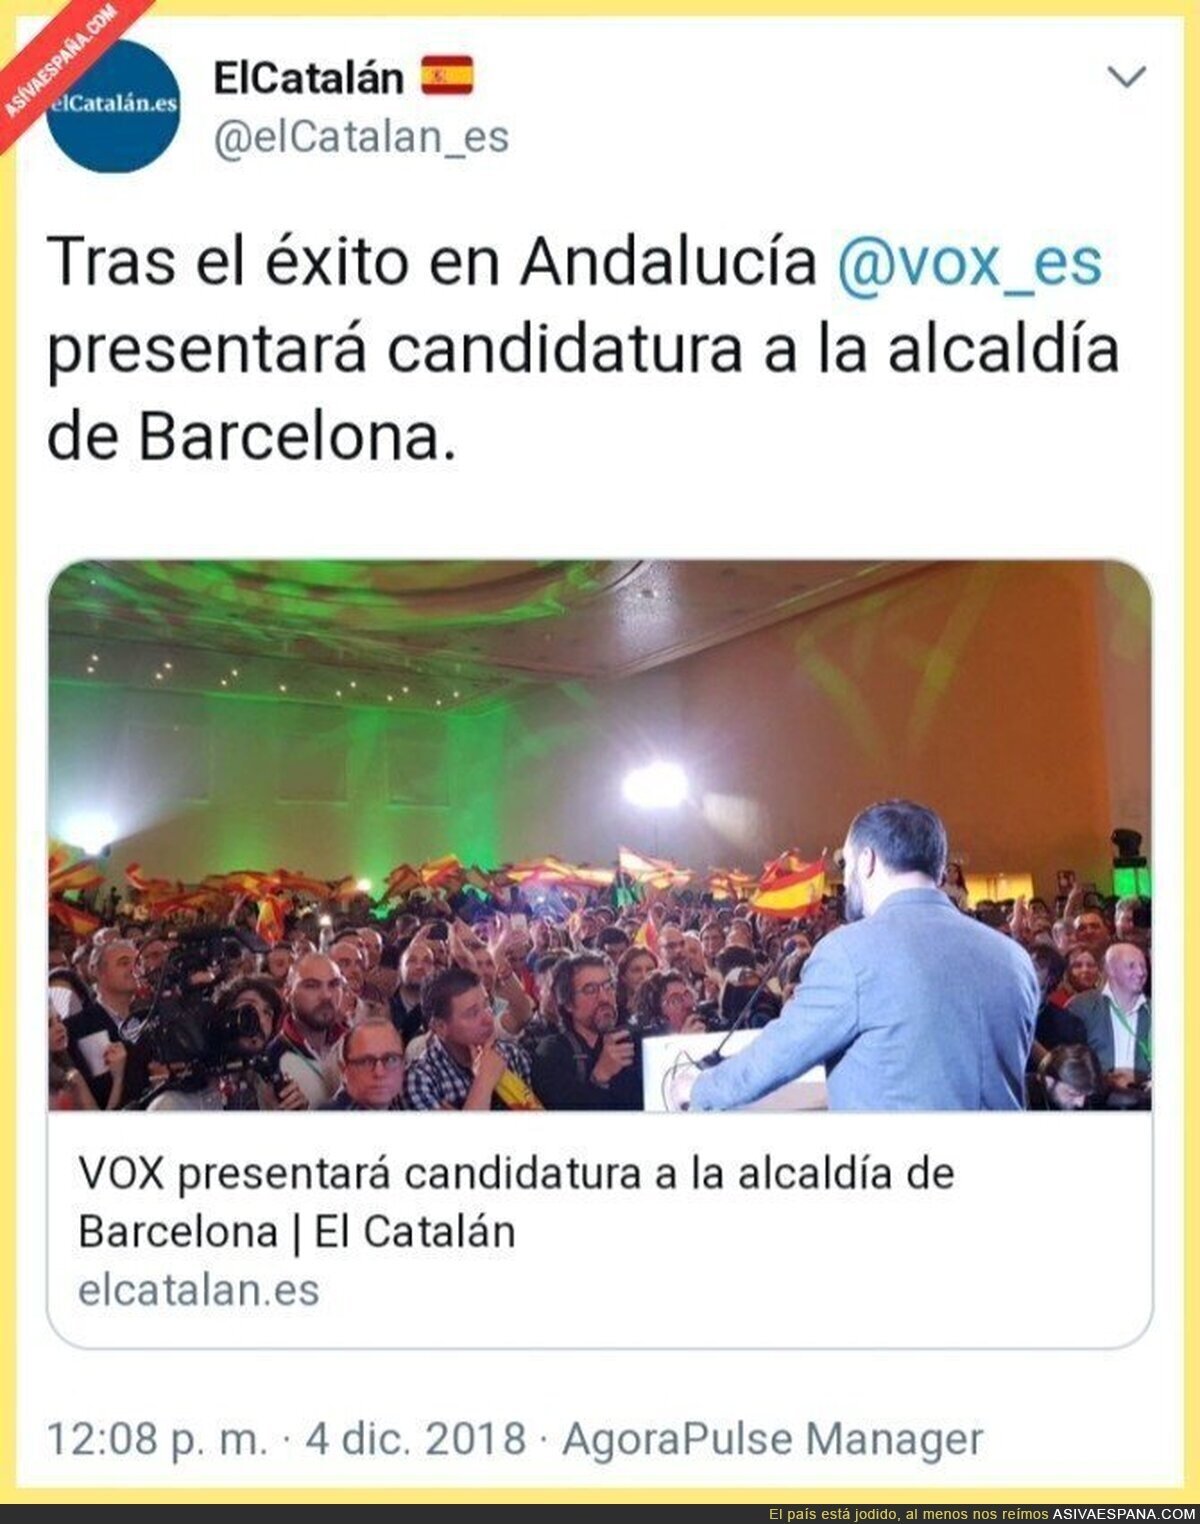 Ciudadanos de Cataluña, VOX ya está aquí